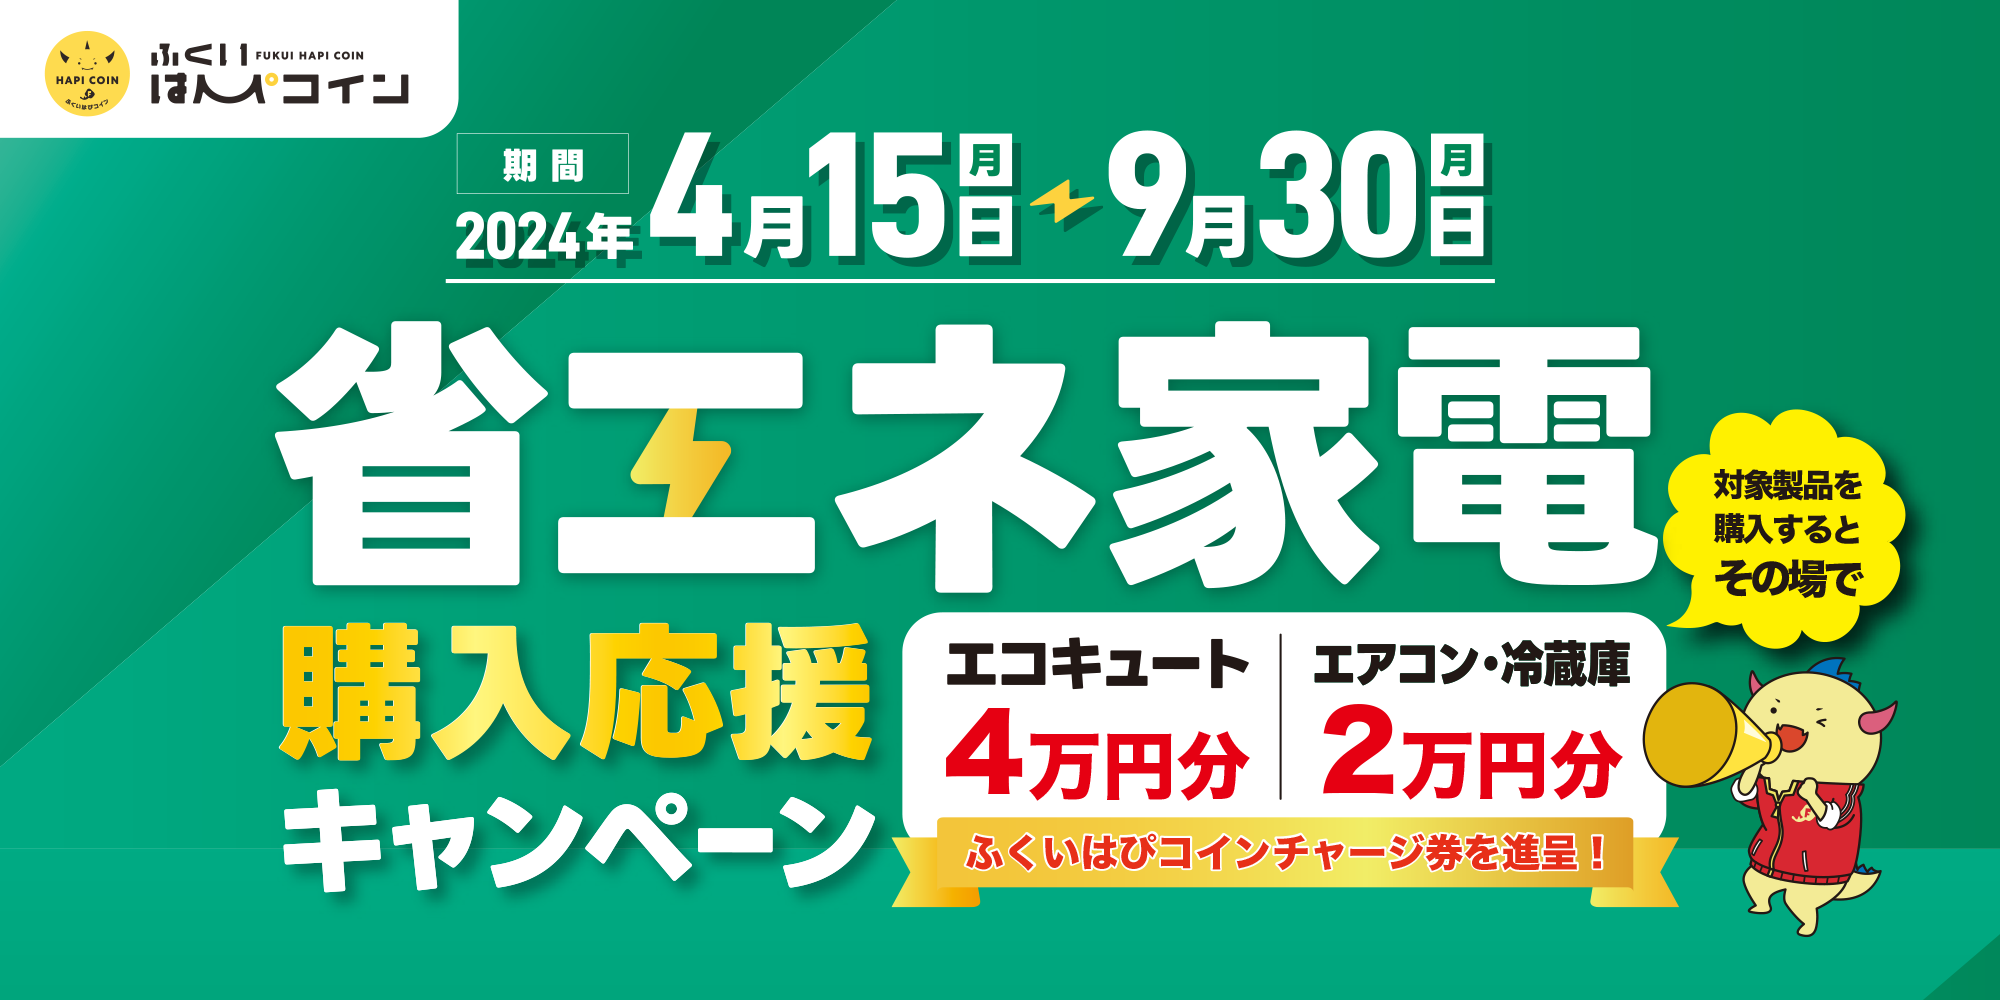 最大4万円のはぴコイン進呈！ 4/15(月)から、ふくアプリ「省エネ家電購入応援キャンペーン」が始まるよ！